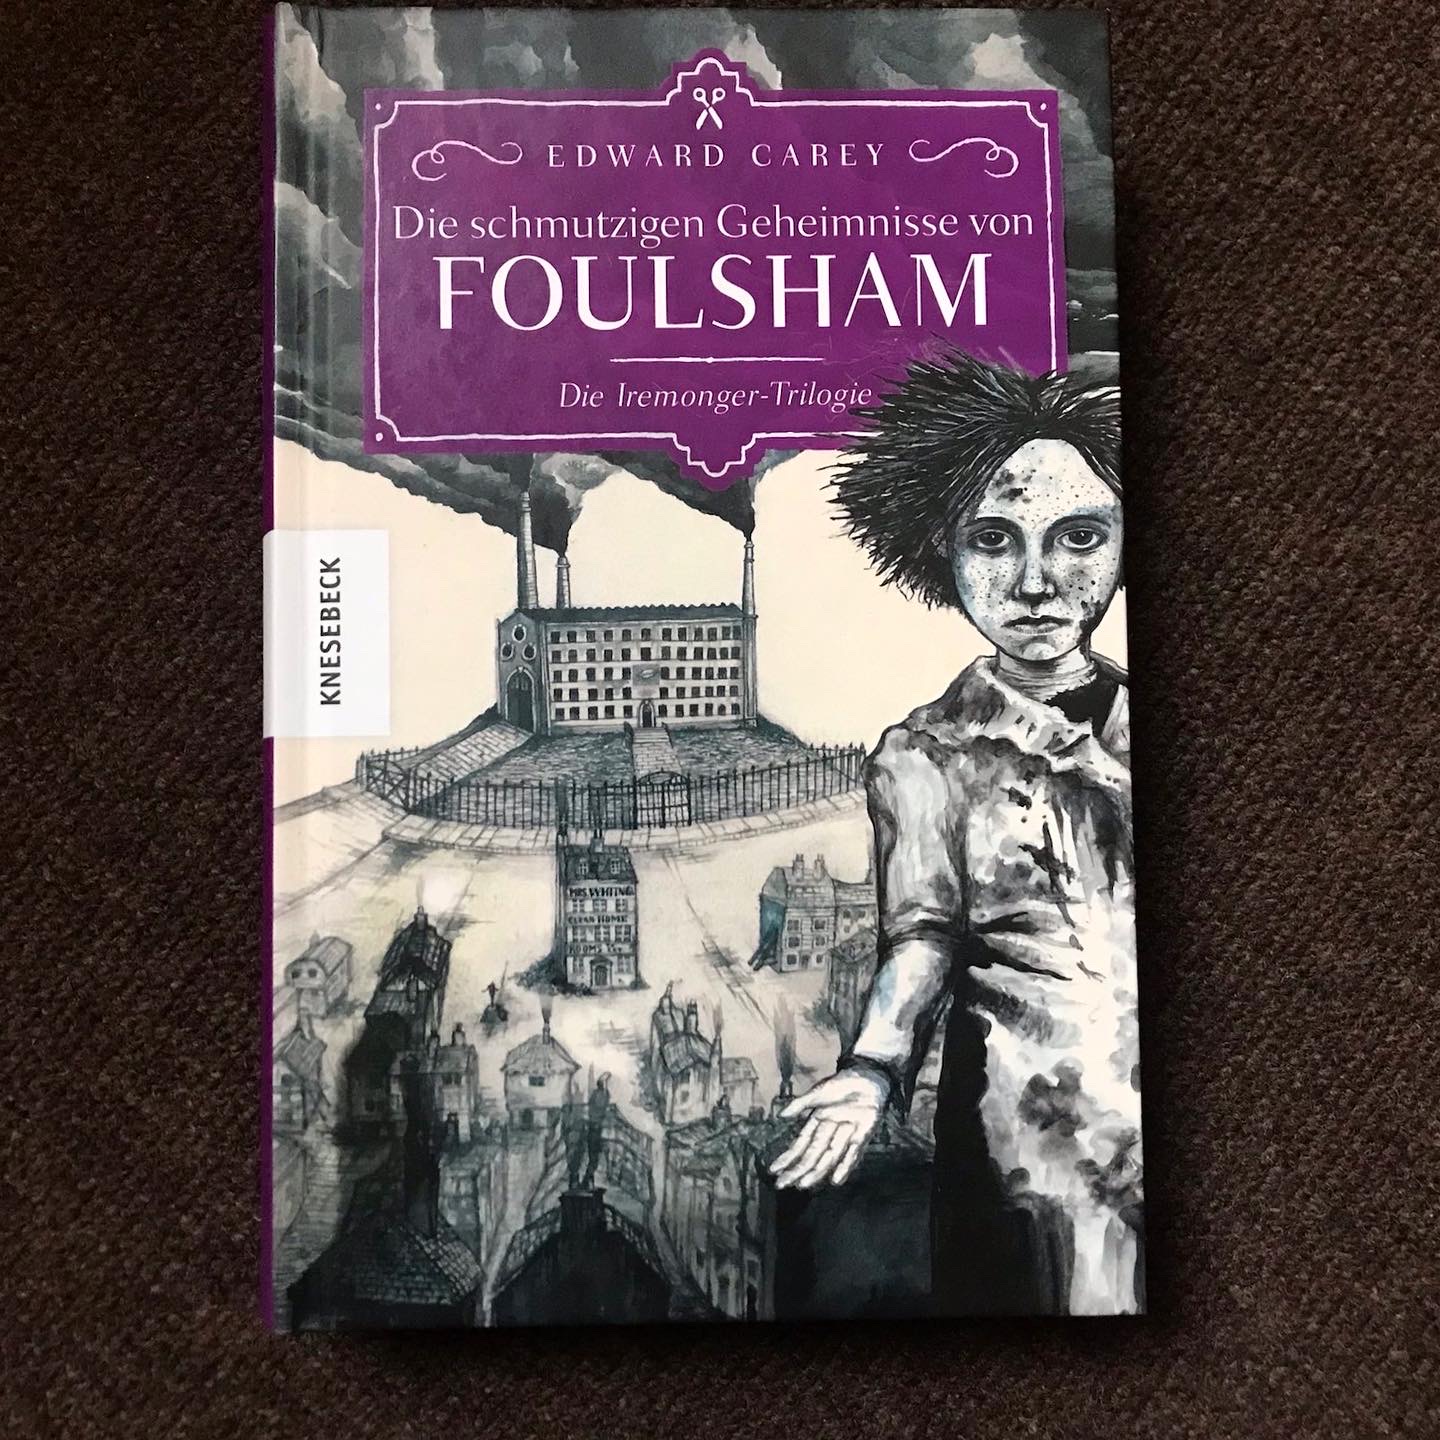 Die schmutzigen Geheimnisse von Foulsham – Die Iremonger-Trilogie